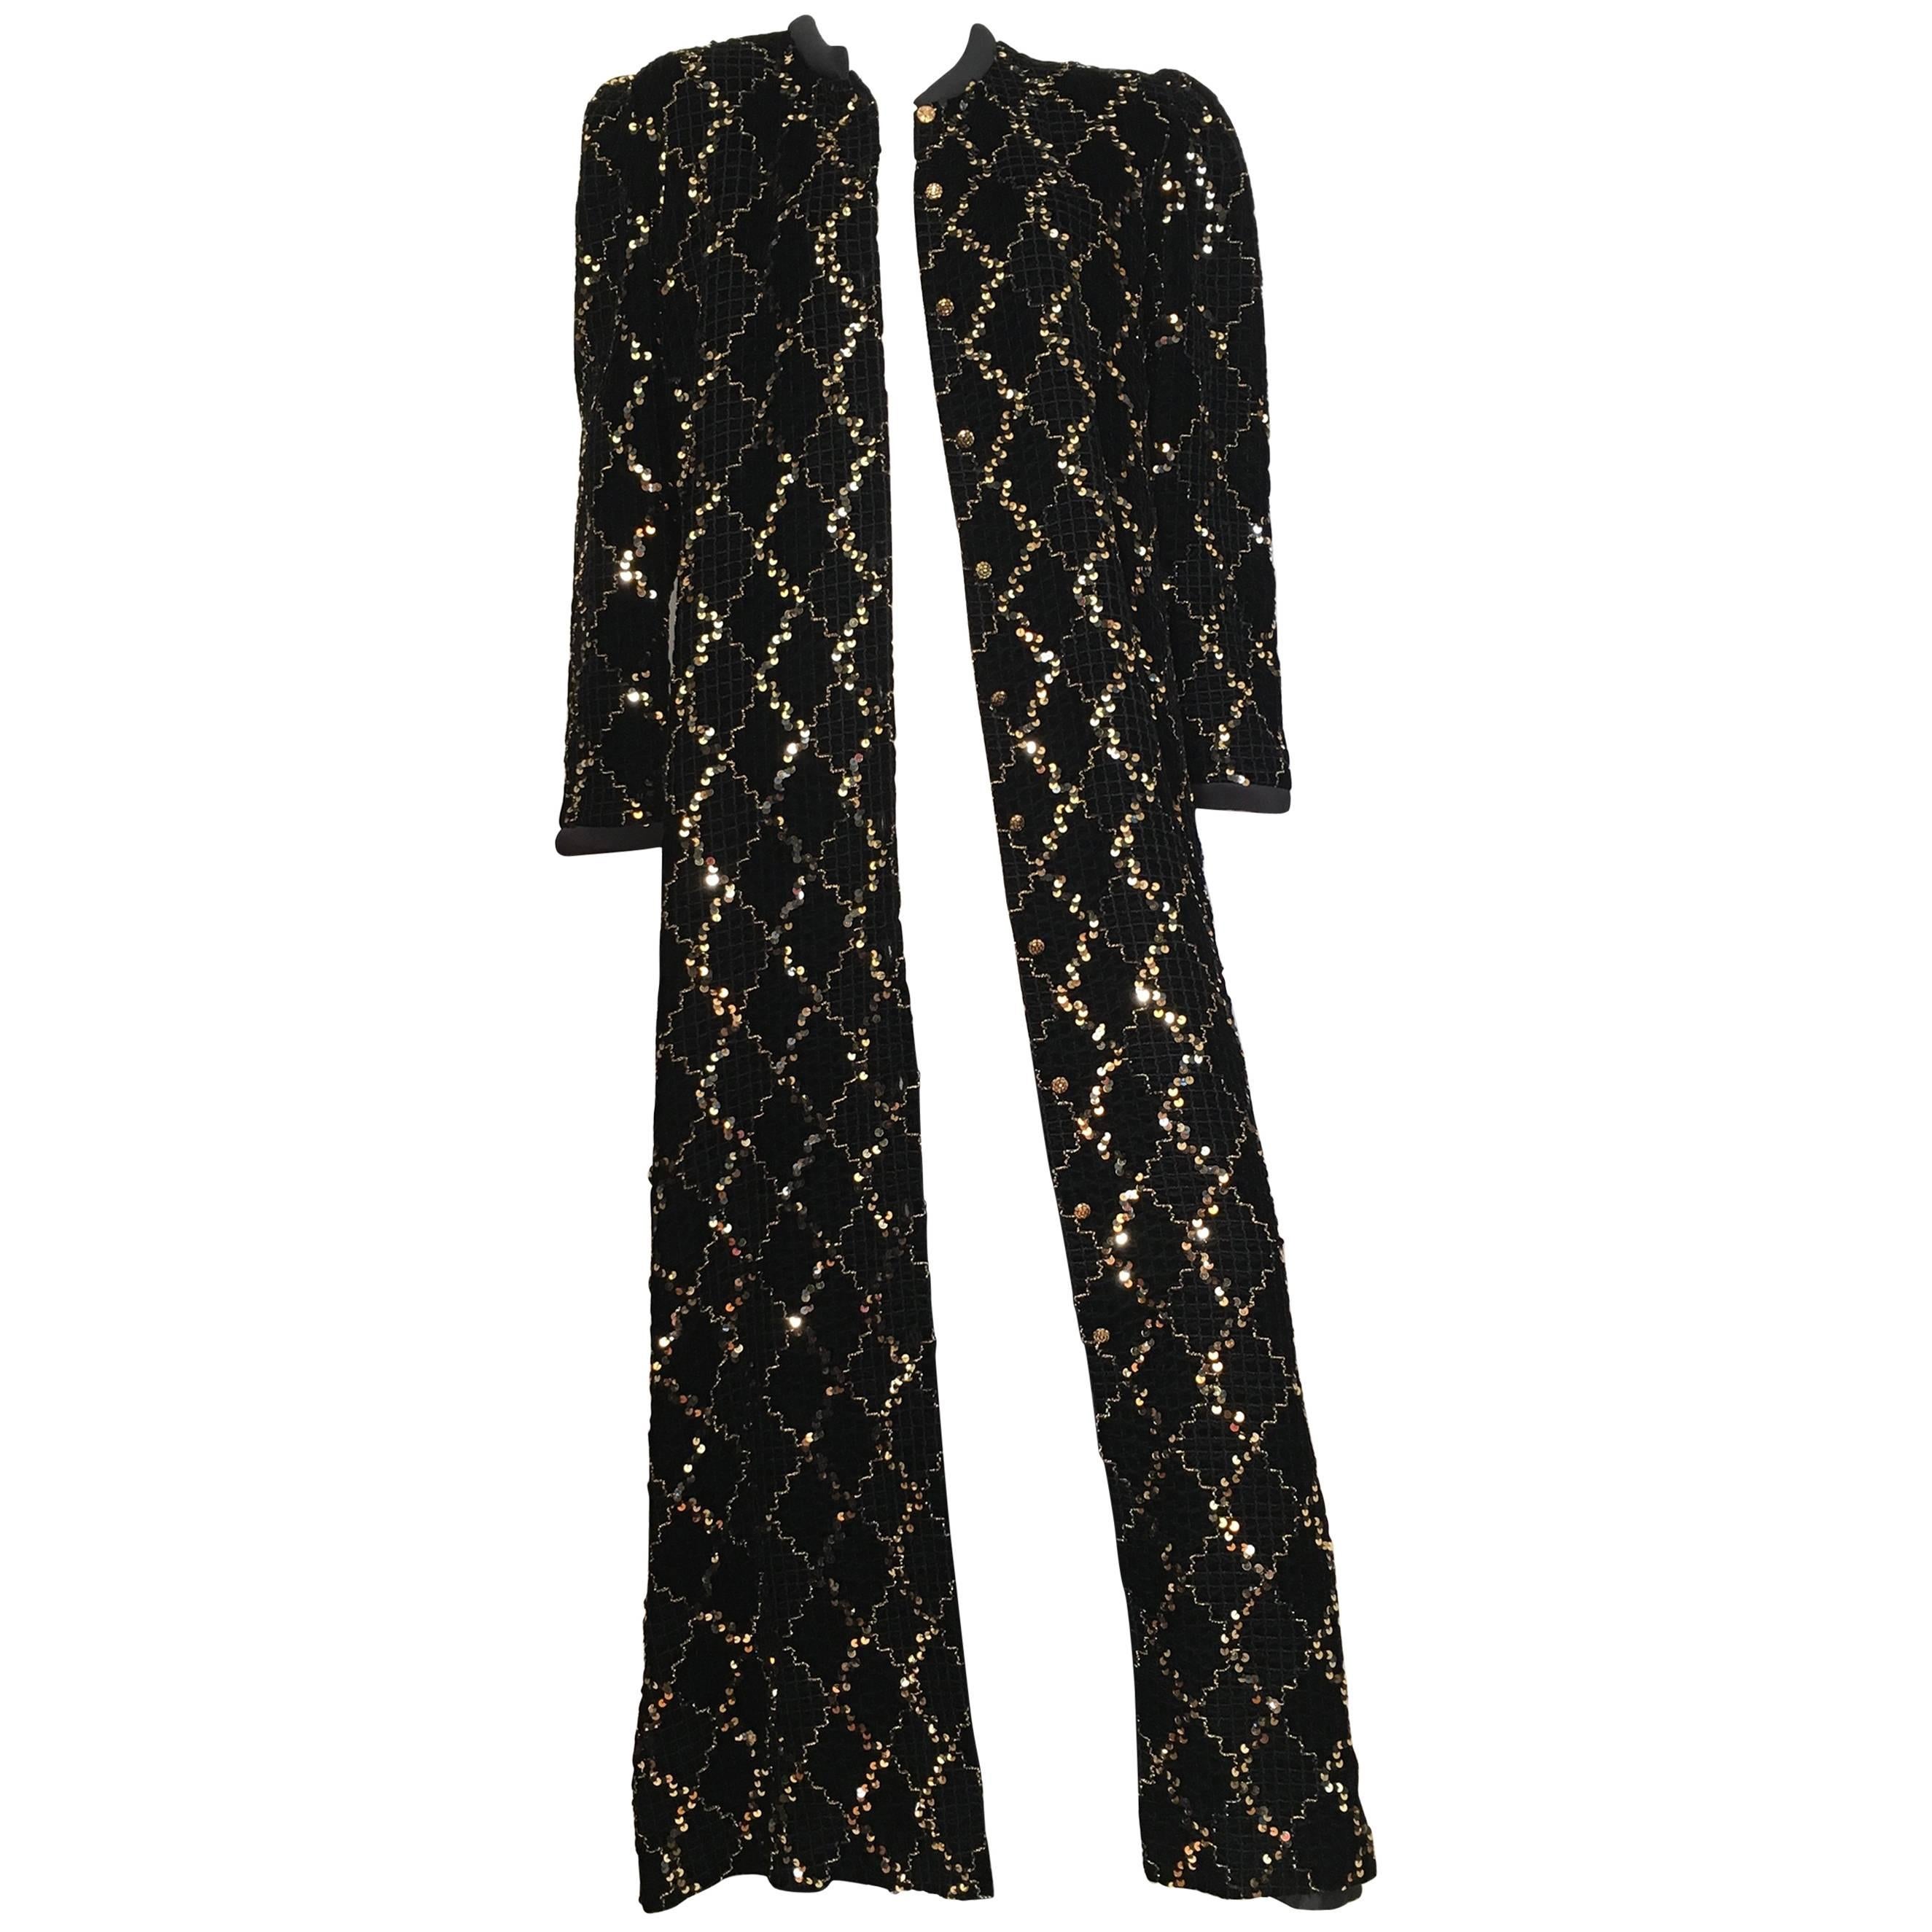 David Brown for Neiman Marcus Black Velvet Sequin Evening Coat Size 10/12.